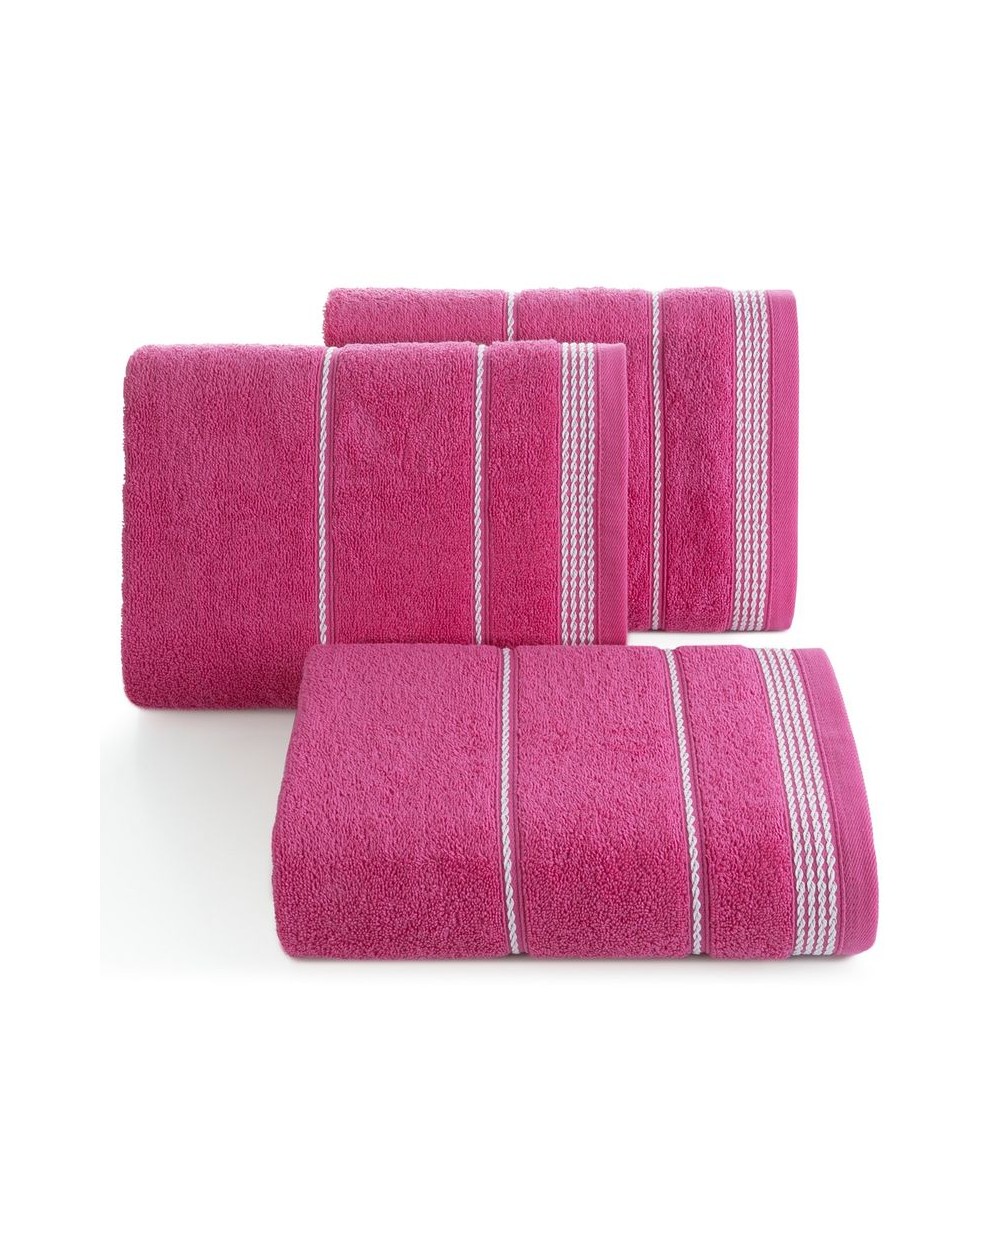 Ręcznik bawełna 70x140 Mira różowy